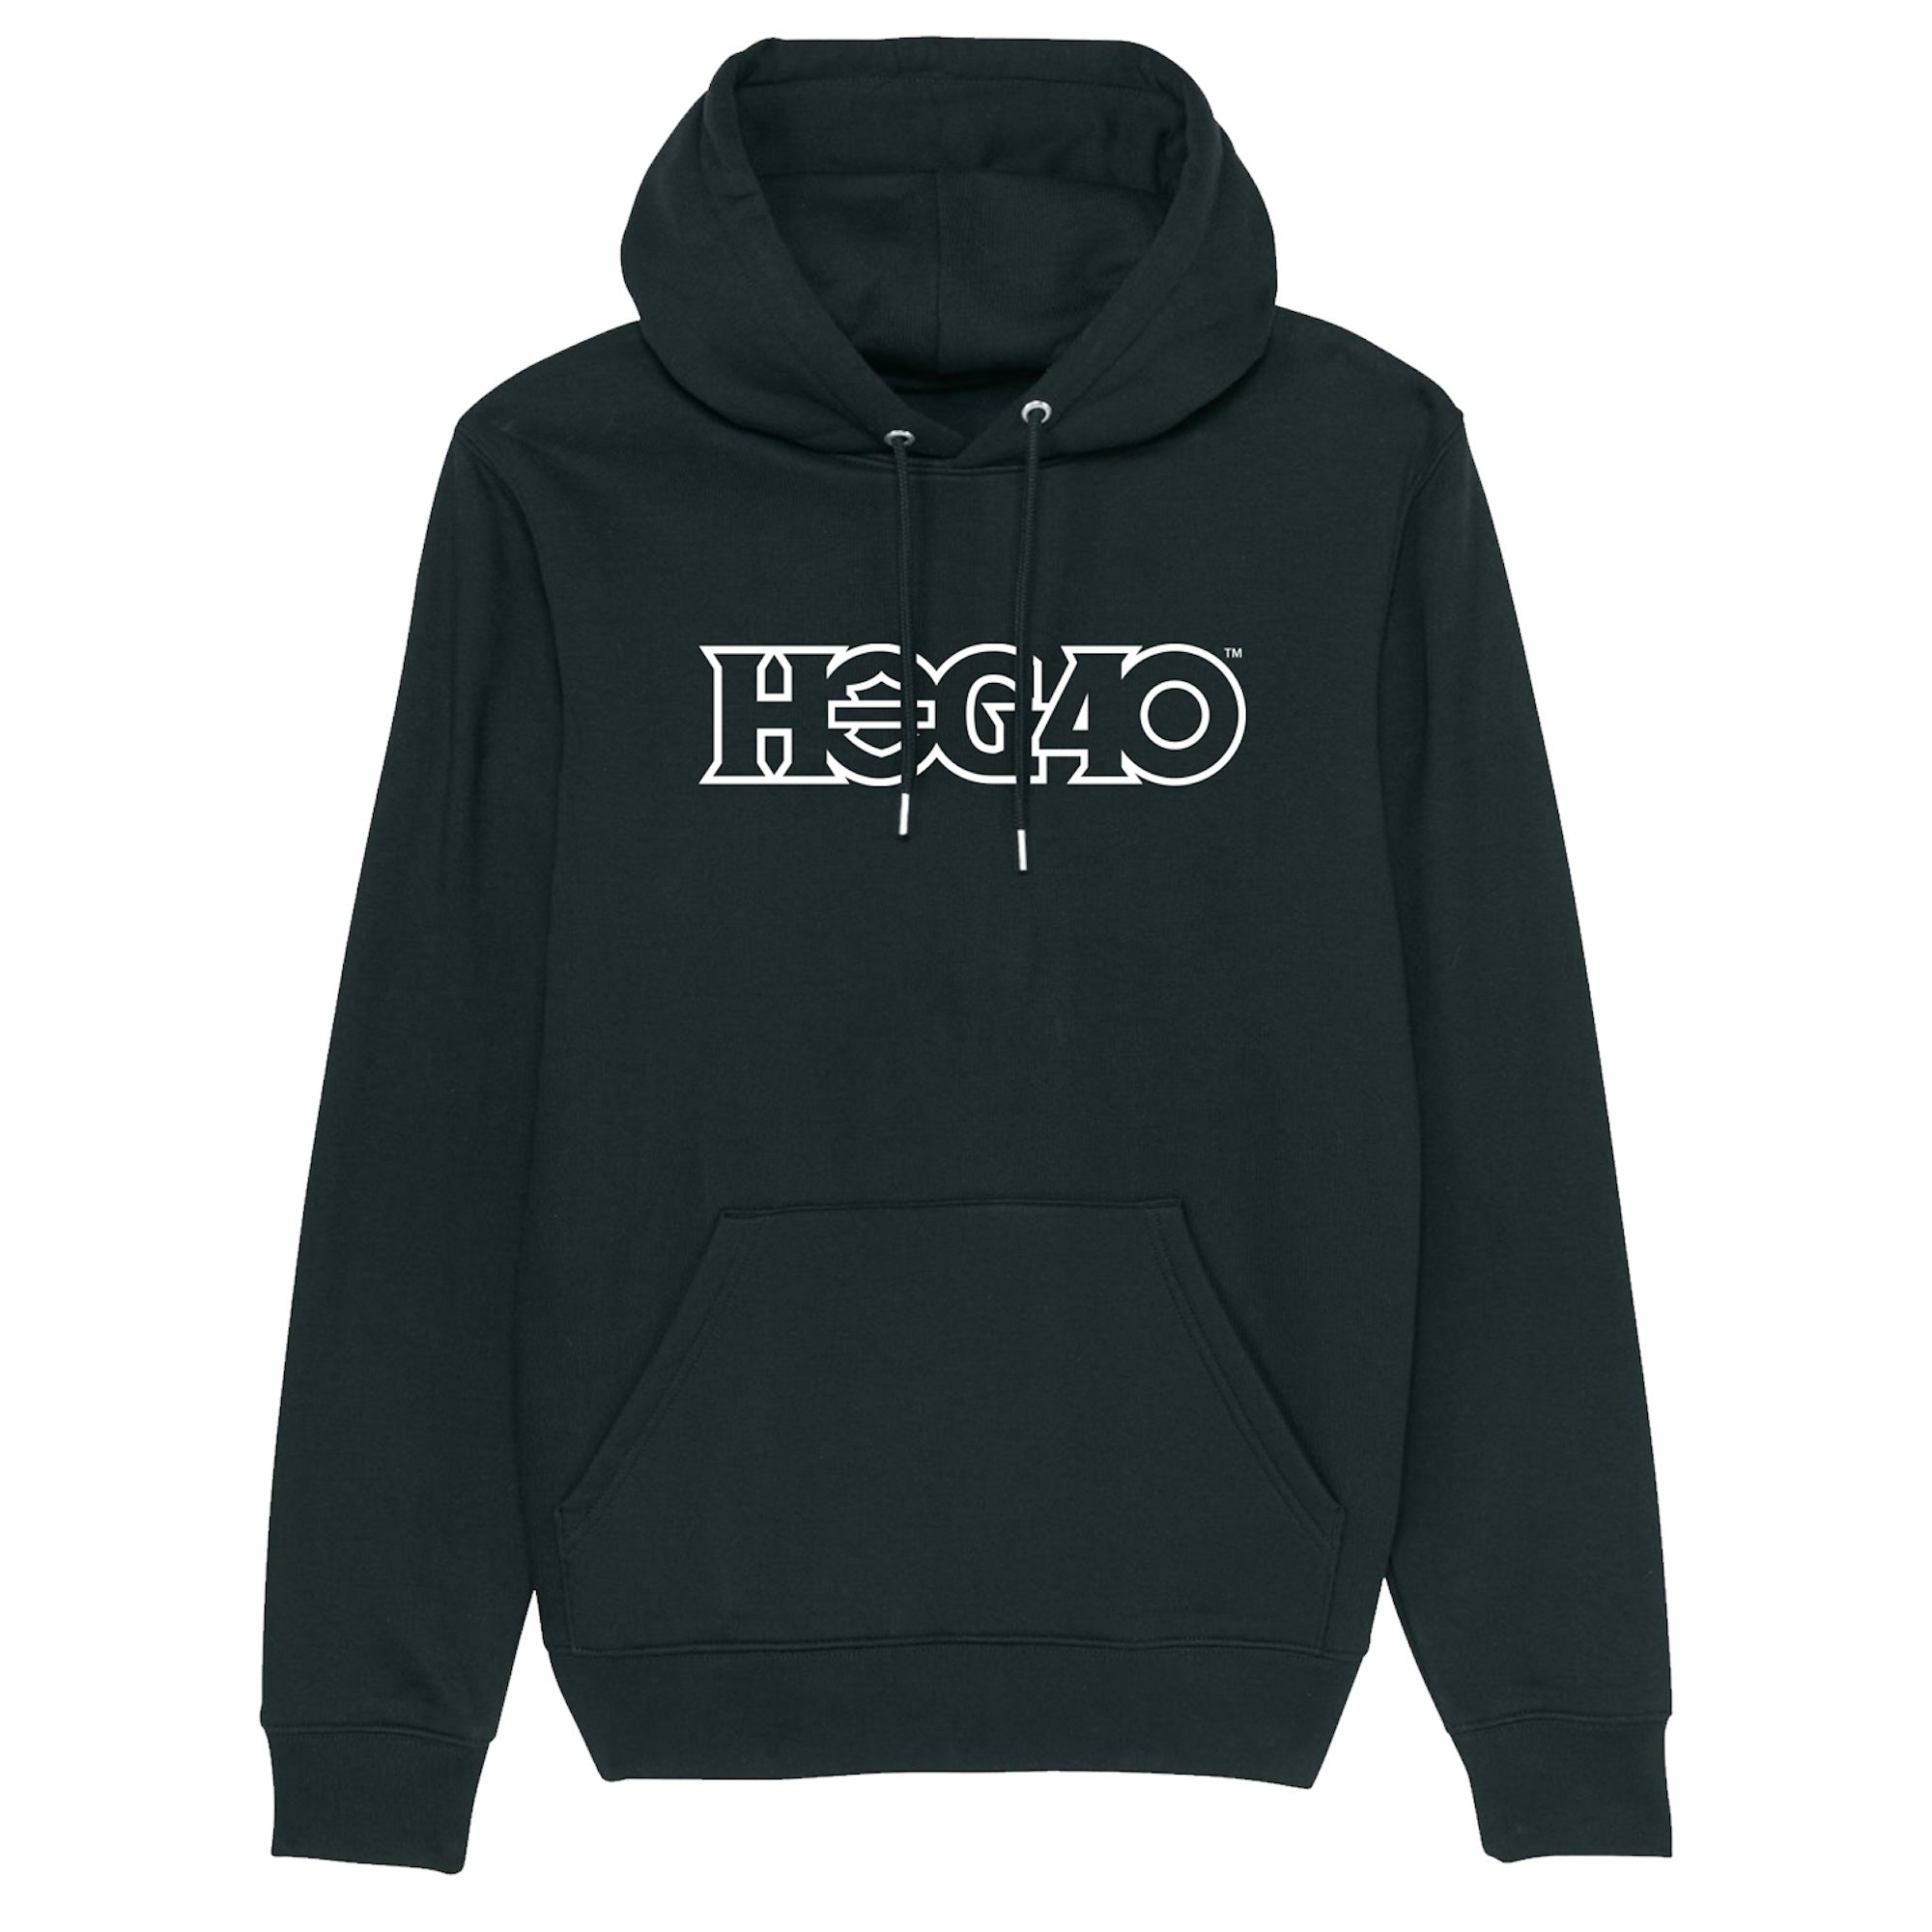 H.O.G40 Logo Hoody